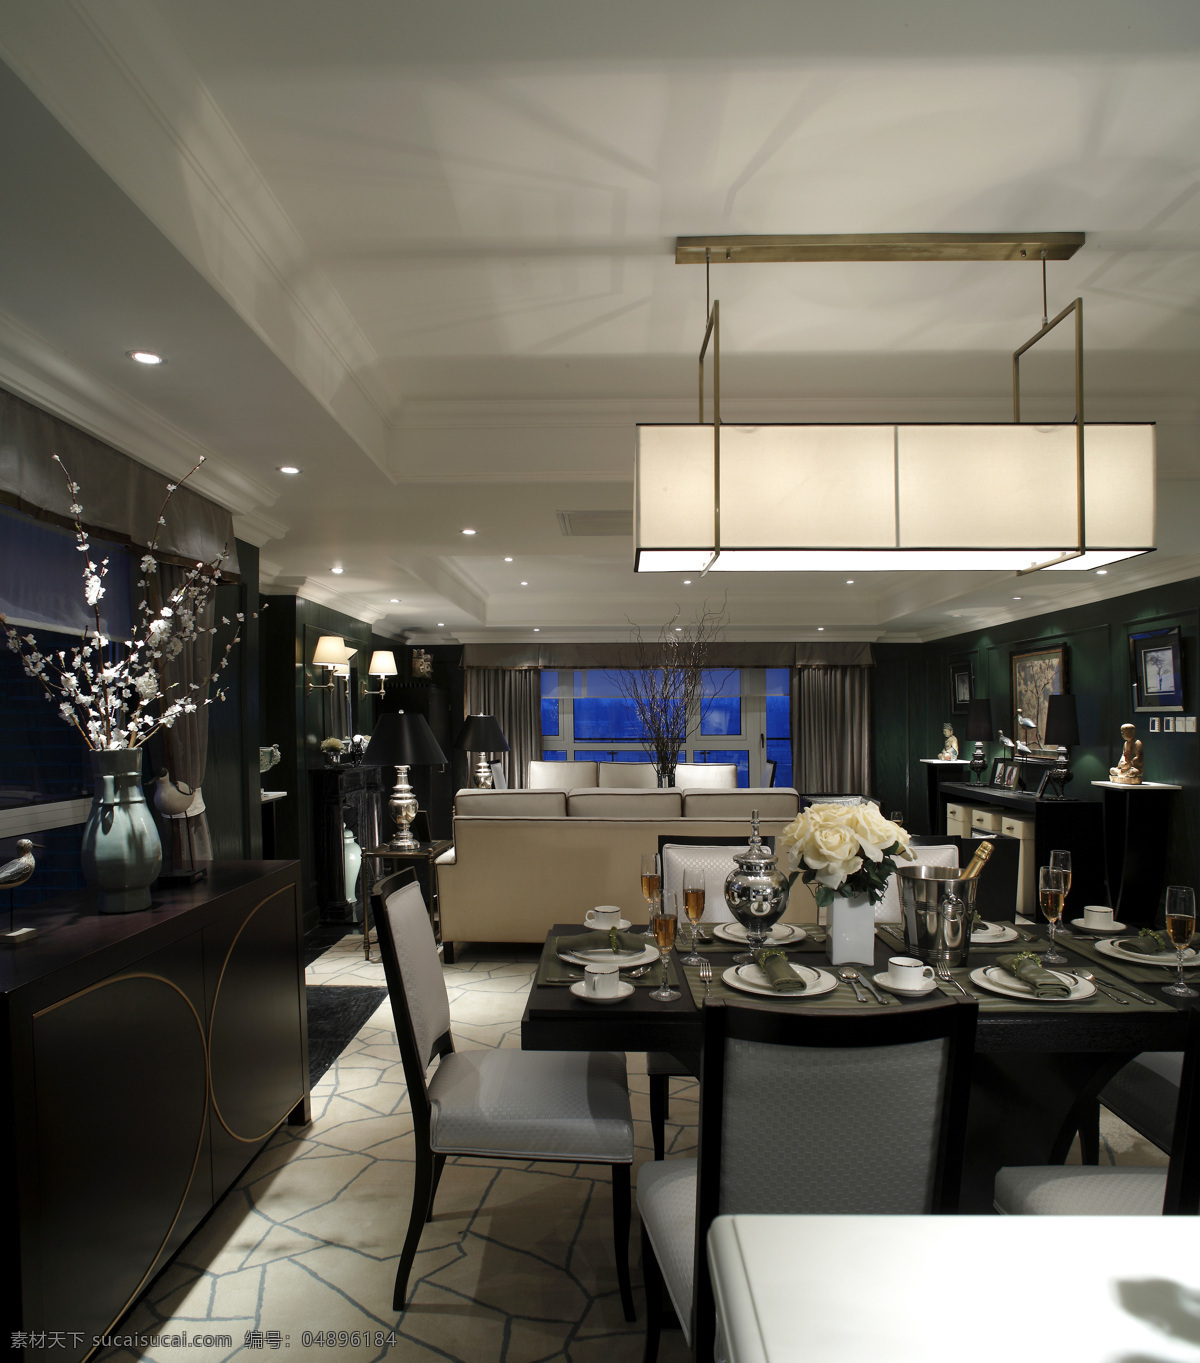 黑白 室内 餐厅 吊灯 现代 奢华 装修 效果图 实木壁柜 长方形餐桌 精美餐具 长方形吊灯